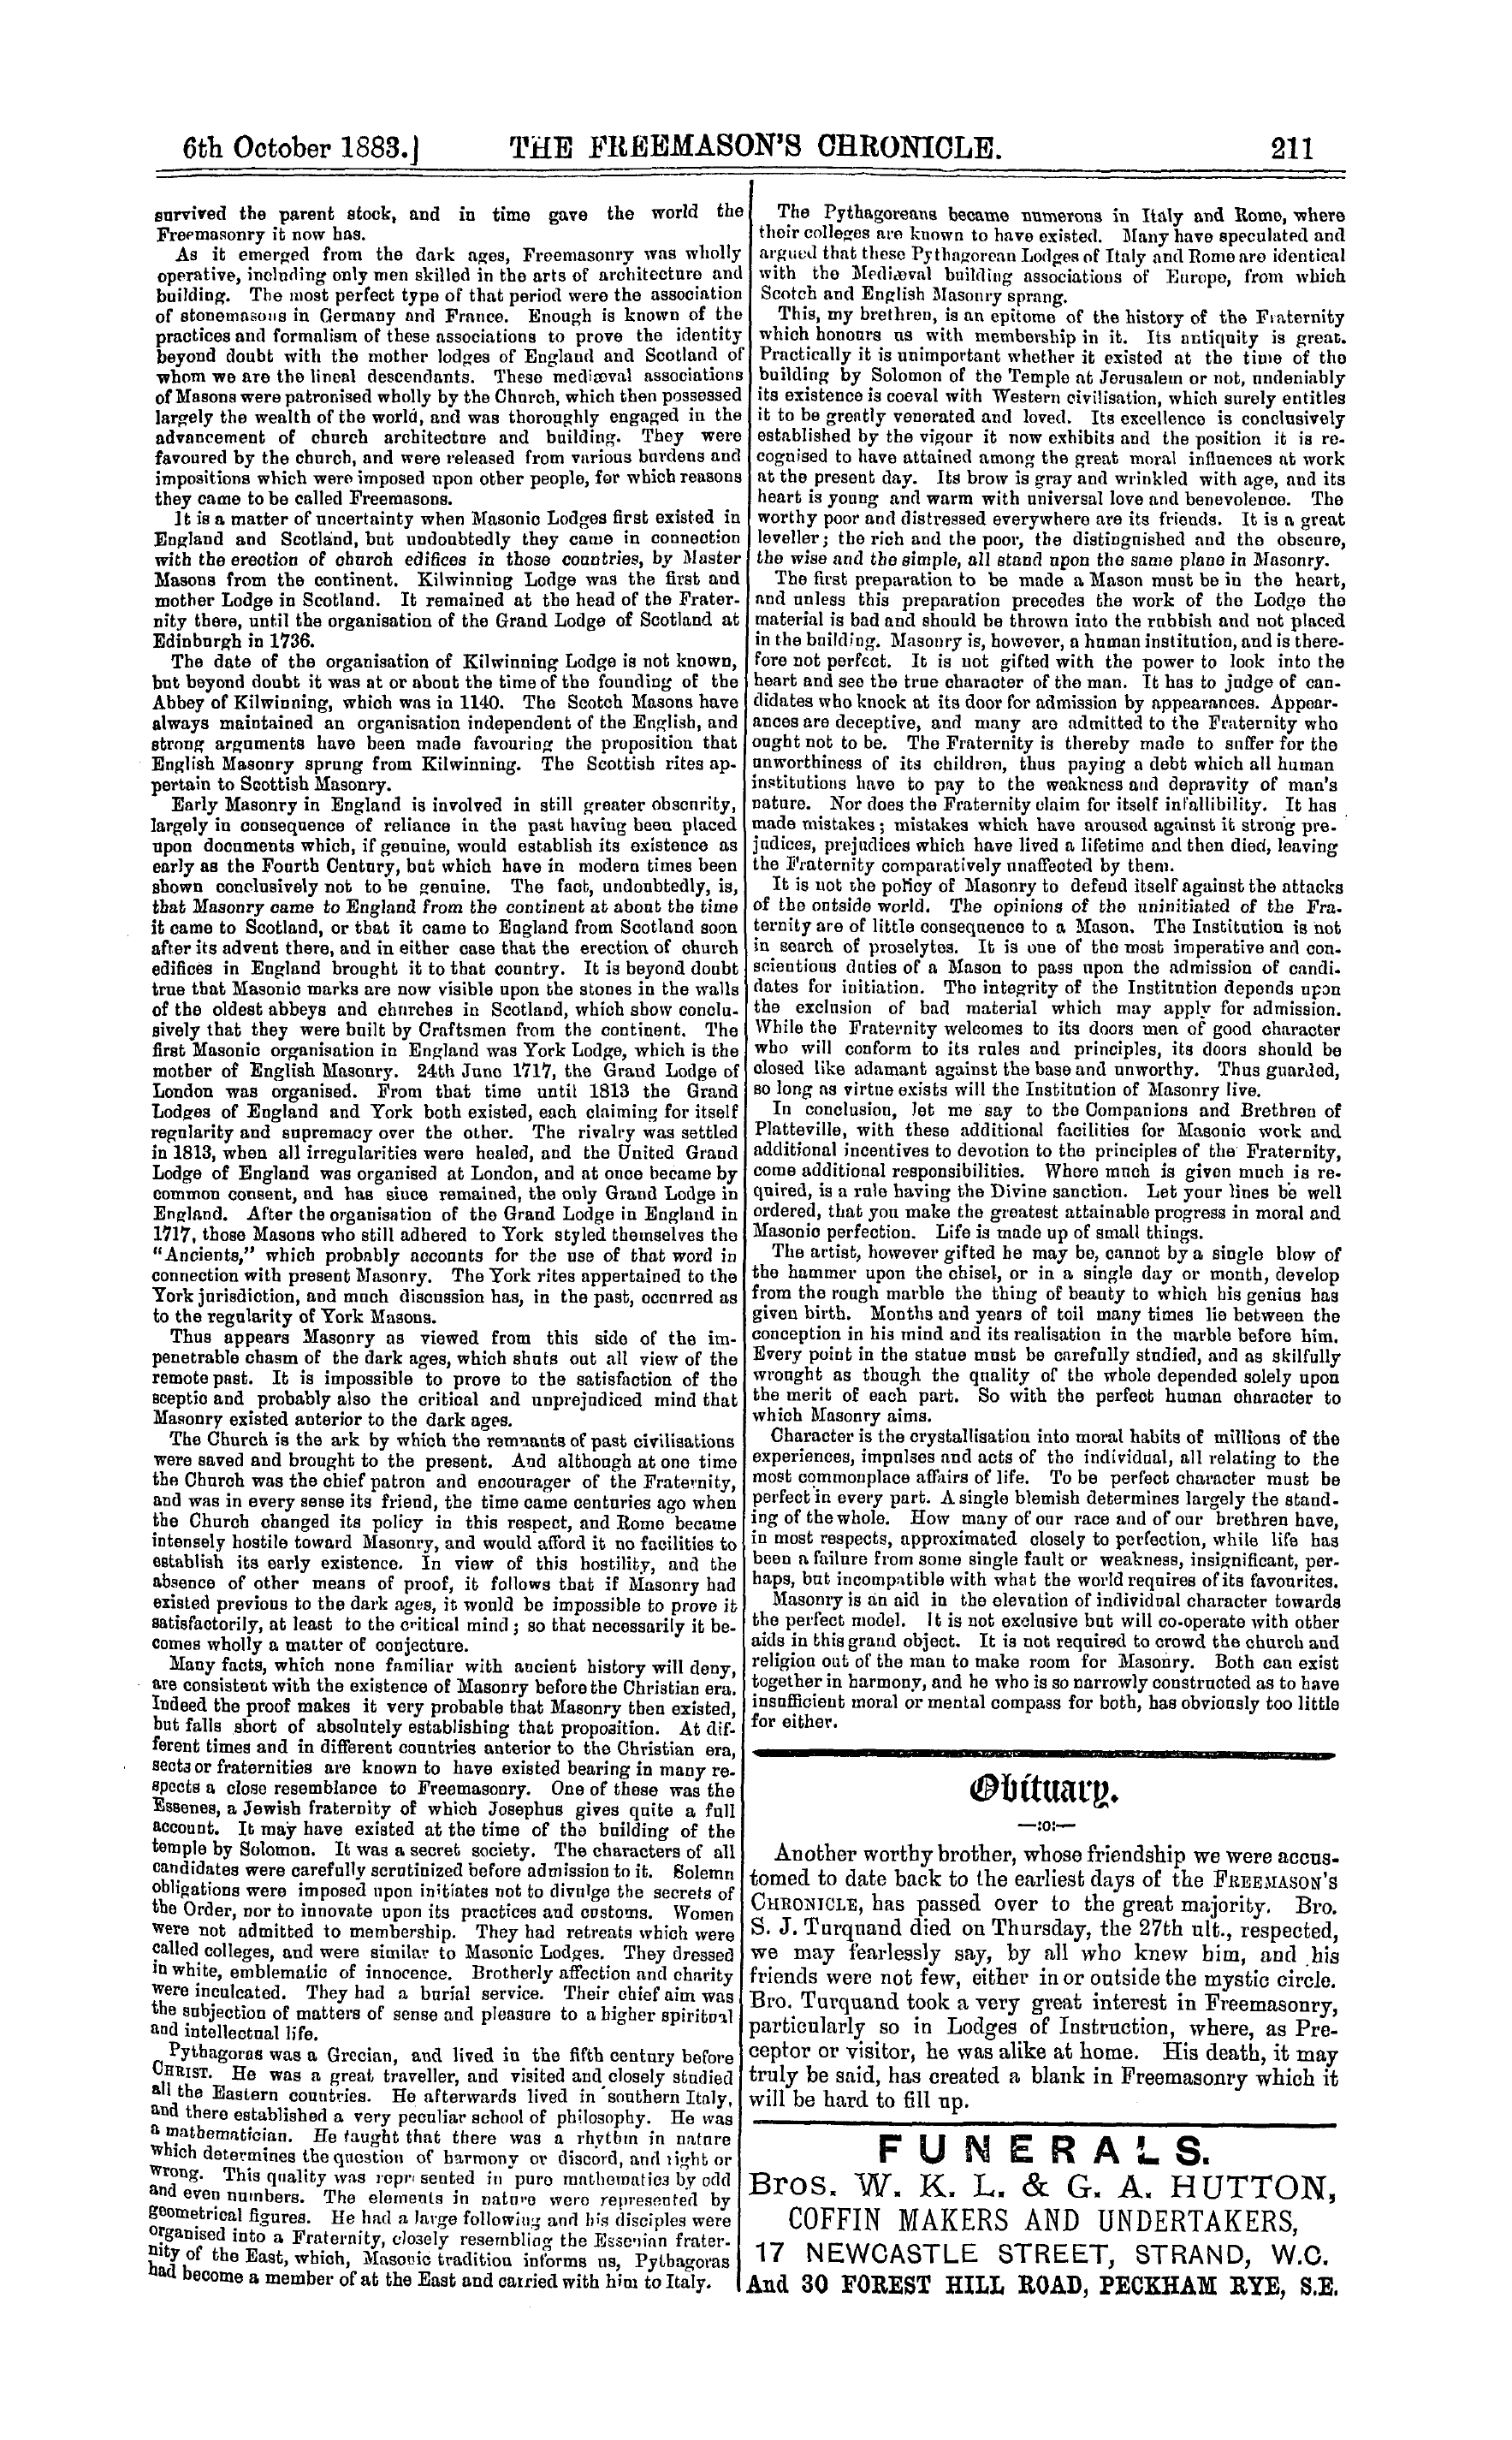 The Freemason's Chronicle: 1883-10-06 - " Thus Appears Masonry."